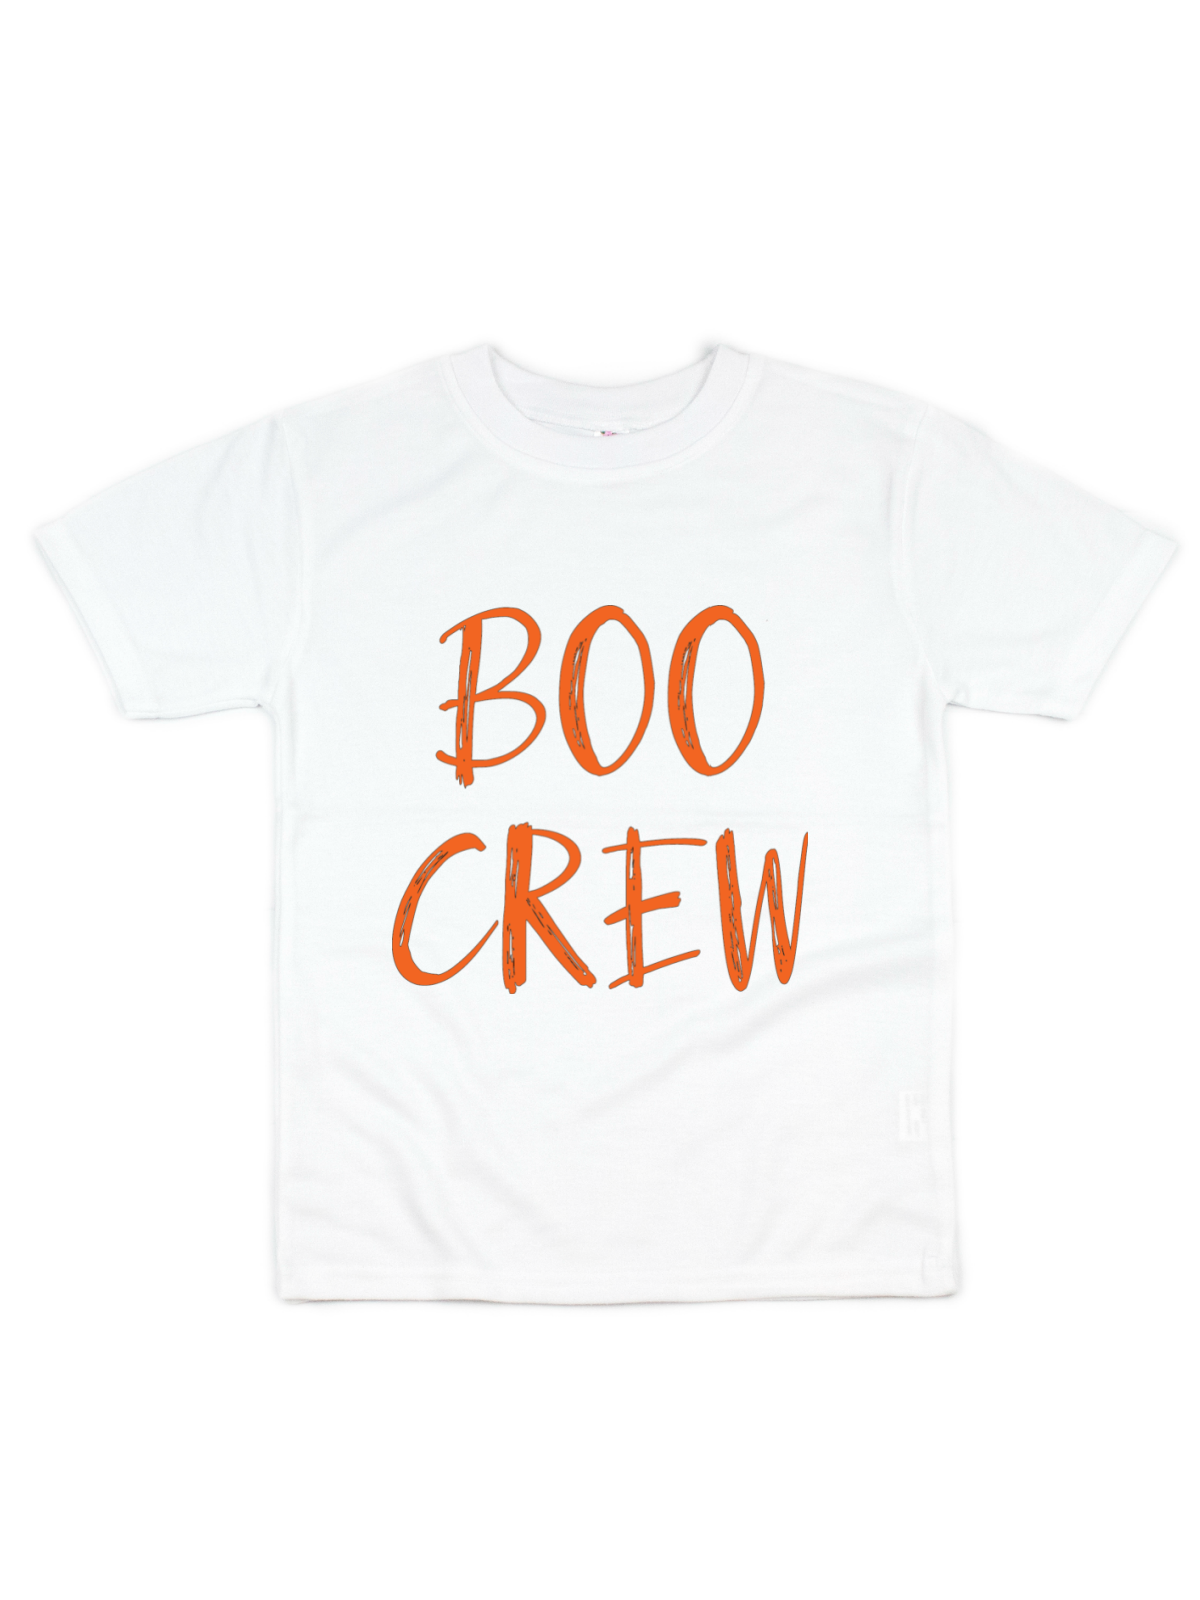 boo crew kids shirt in white